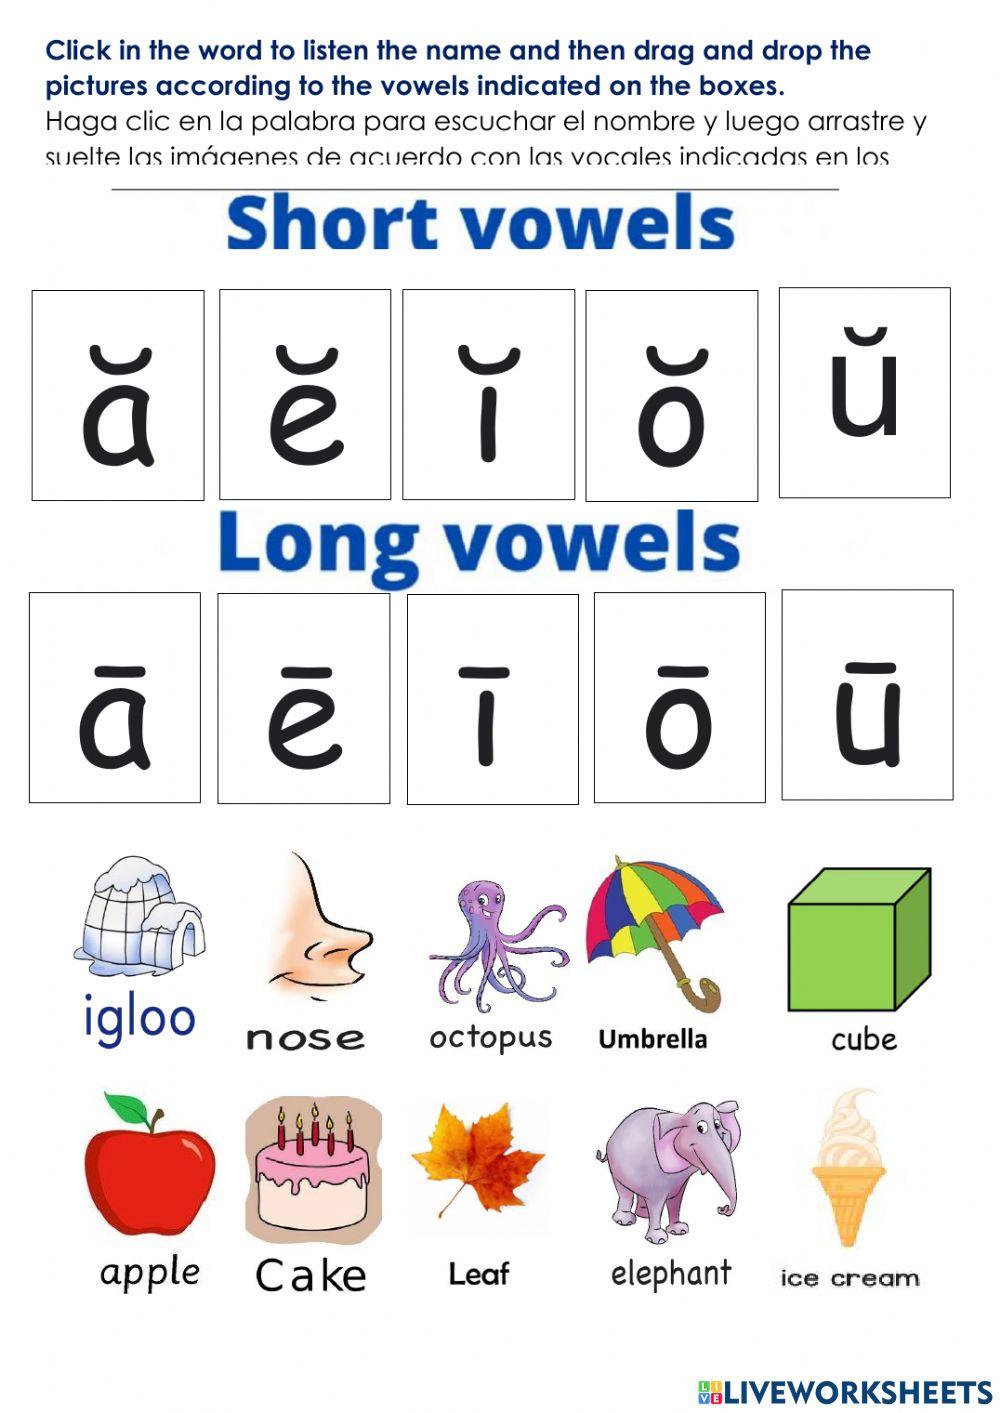 EXAM-Vowel sounds and alphabet